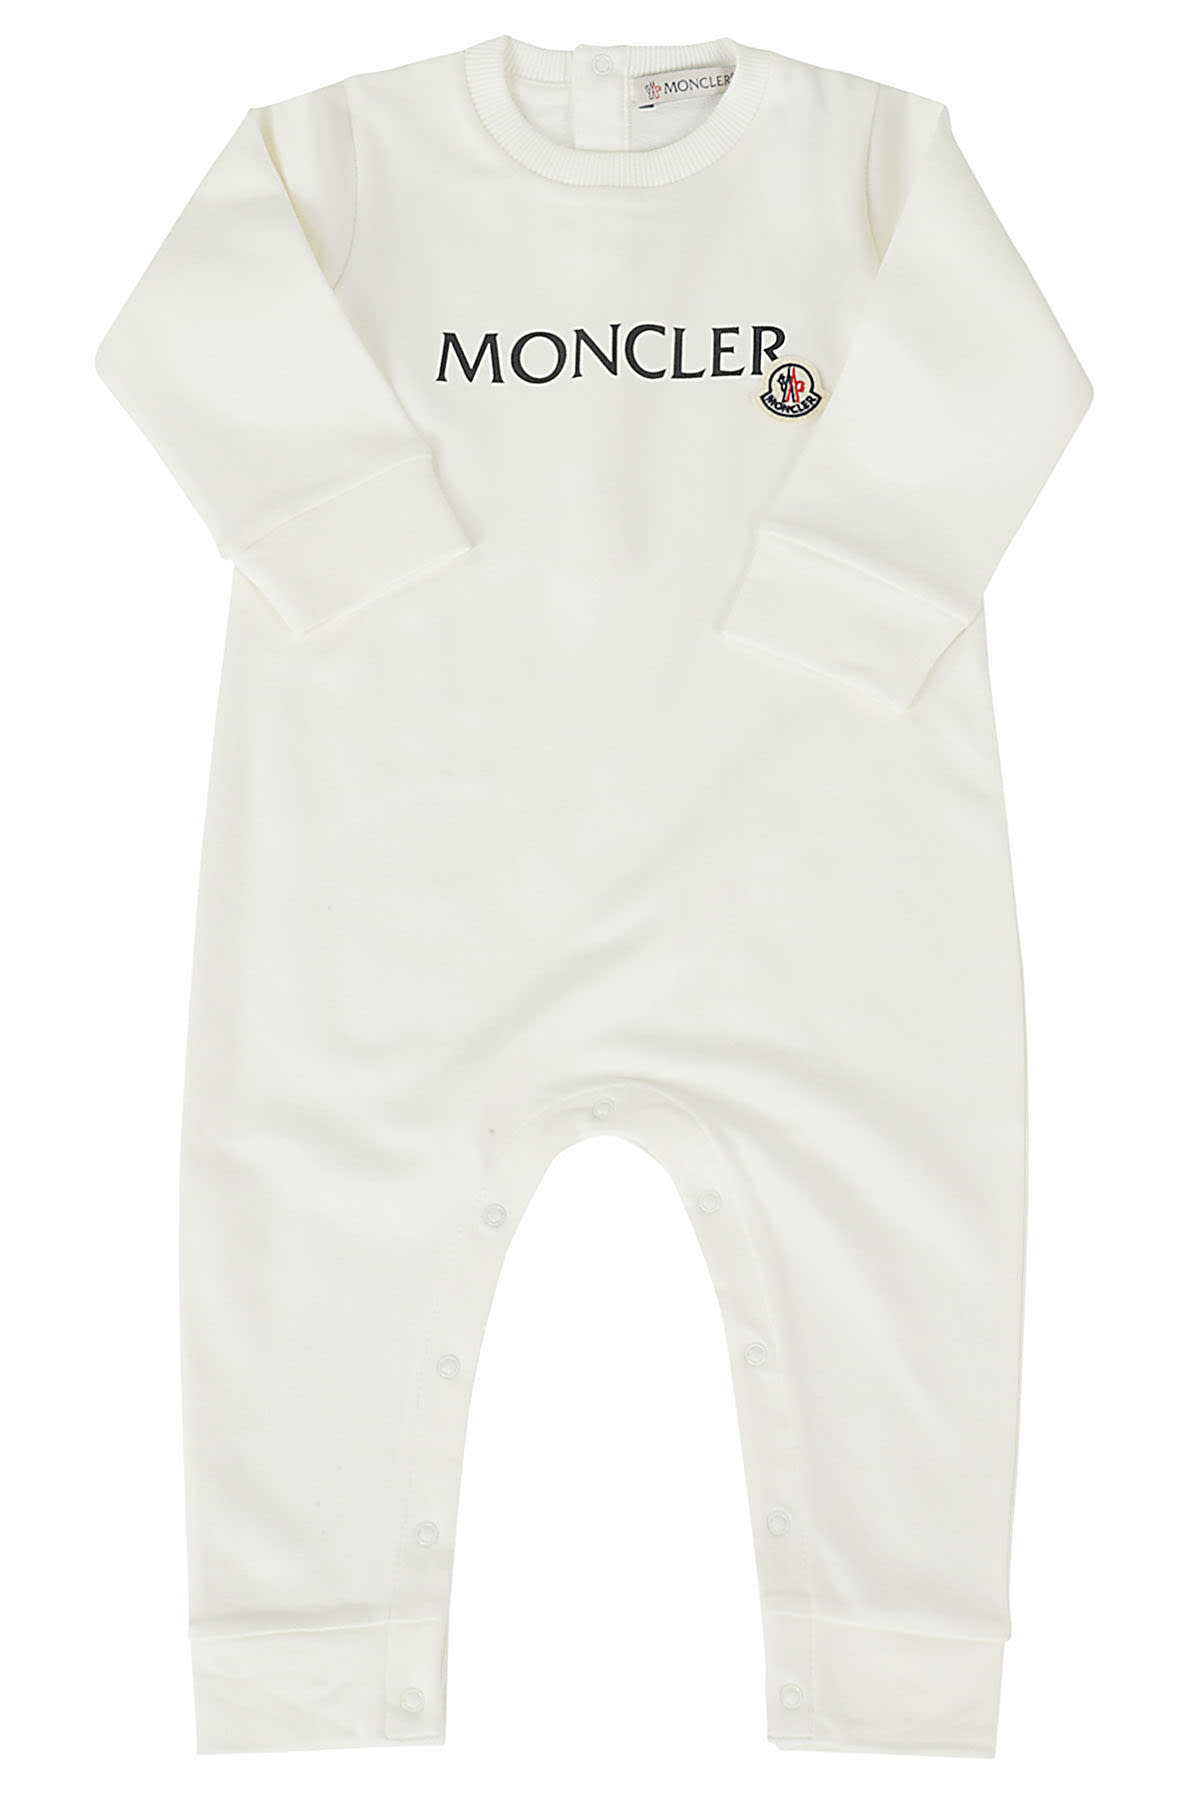 Moncler Babies' Tutina In Bianco